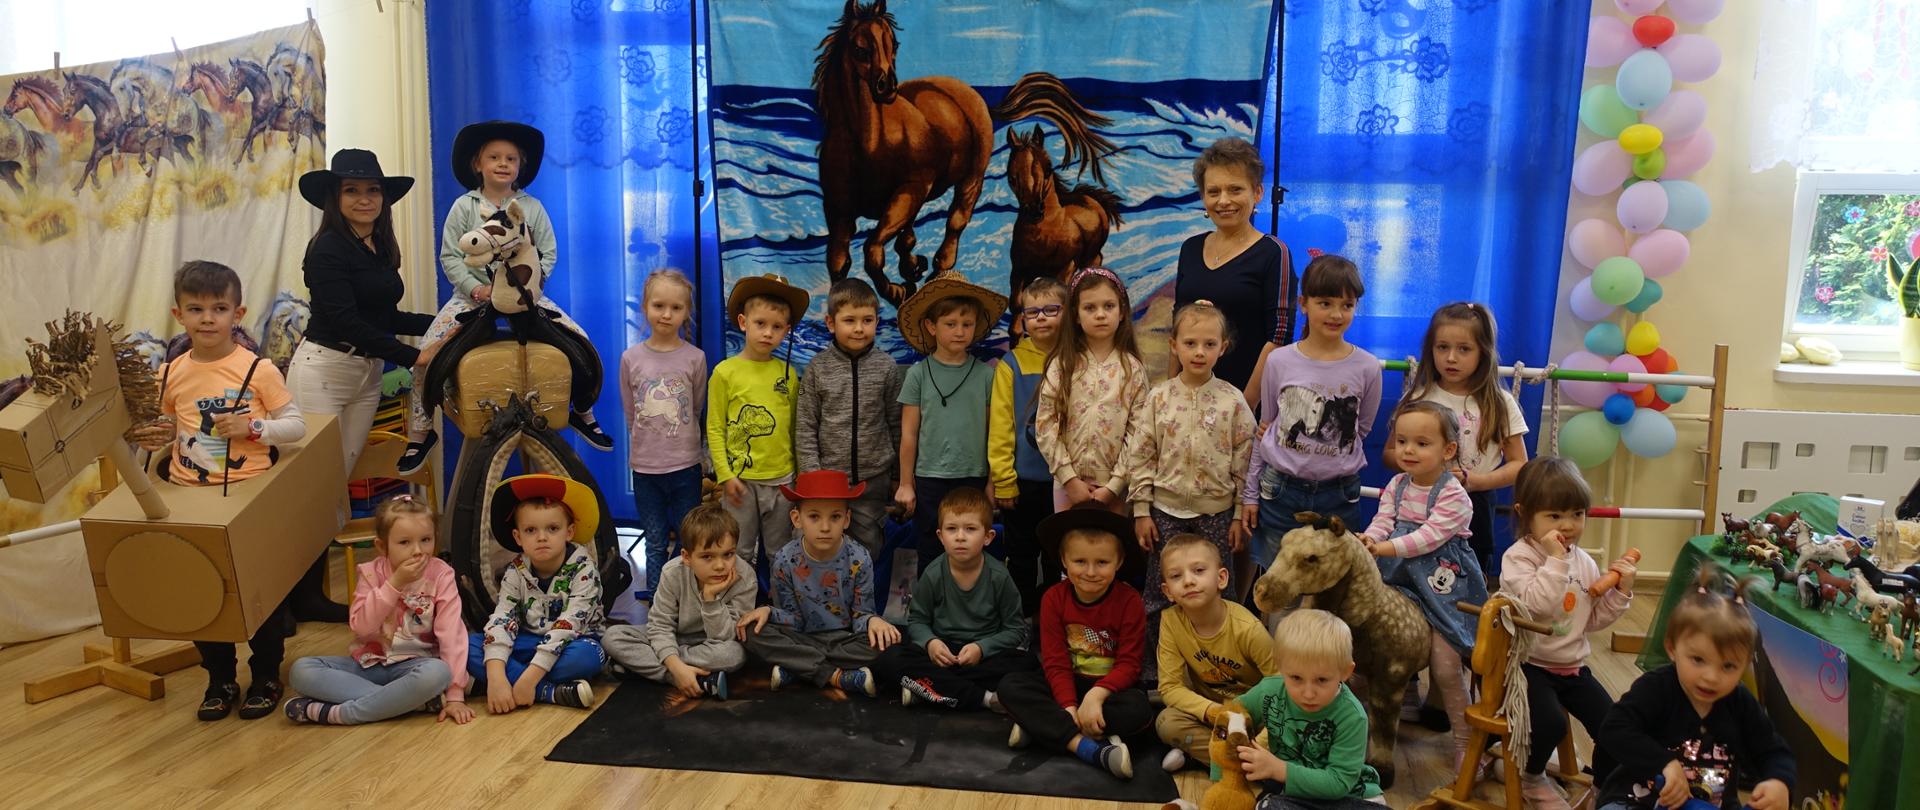 Zdjęcie grupowe przedszkolaków na tle dekoracji. 